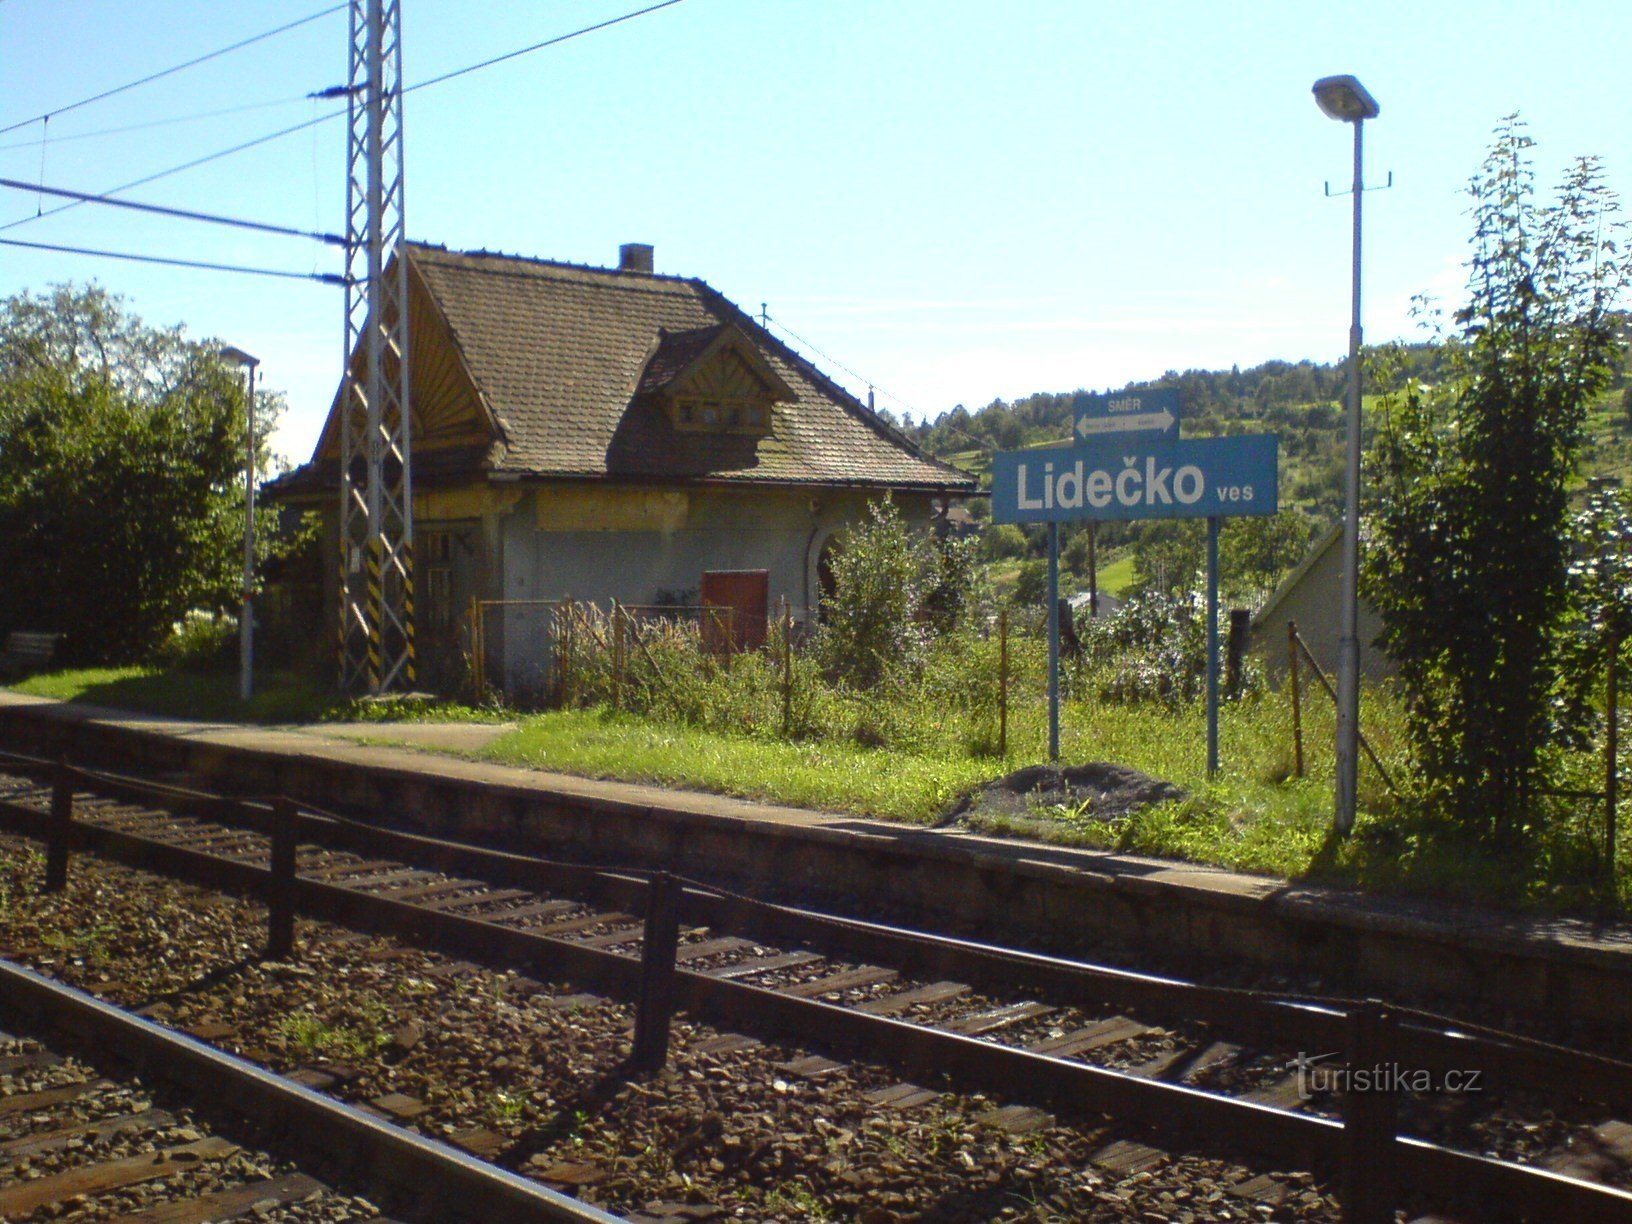 Lidečko falu - vasútállomás